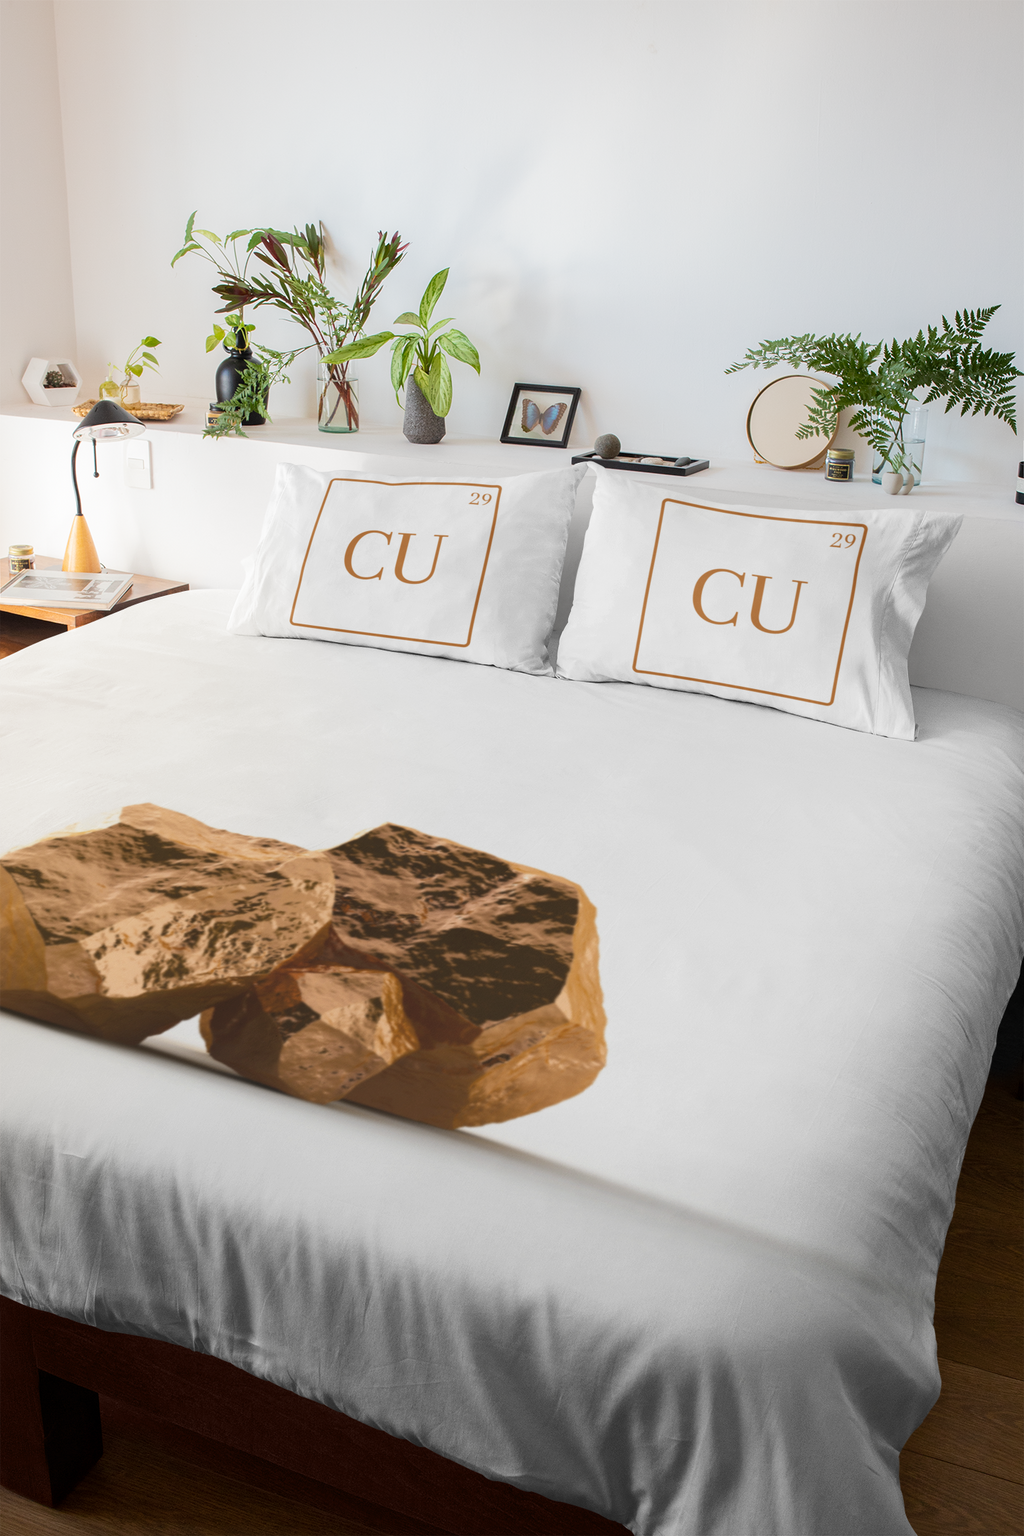 CU29™ Teddy Duvet Cover & Pillowcases - The CU29™ Copper Company